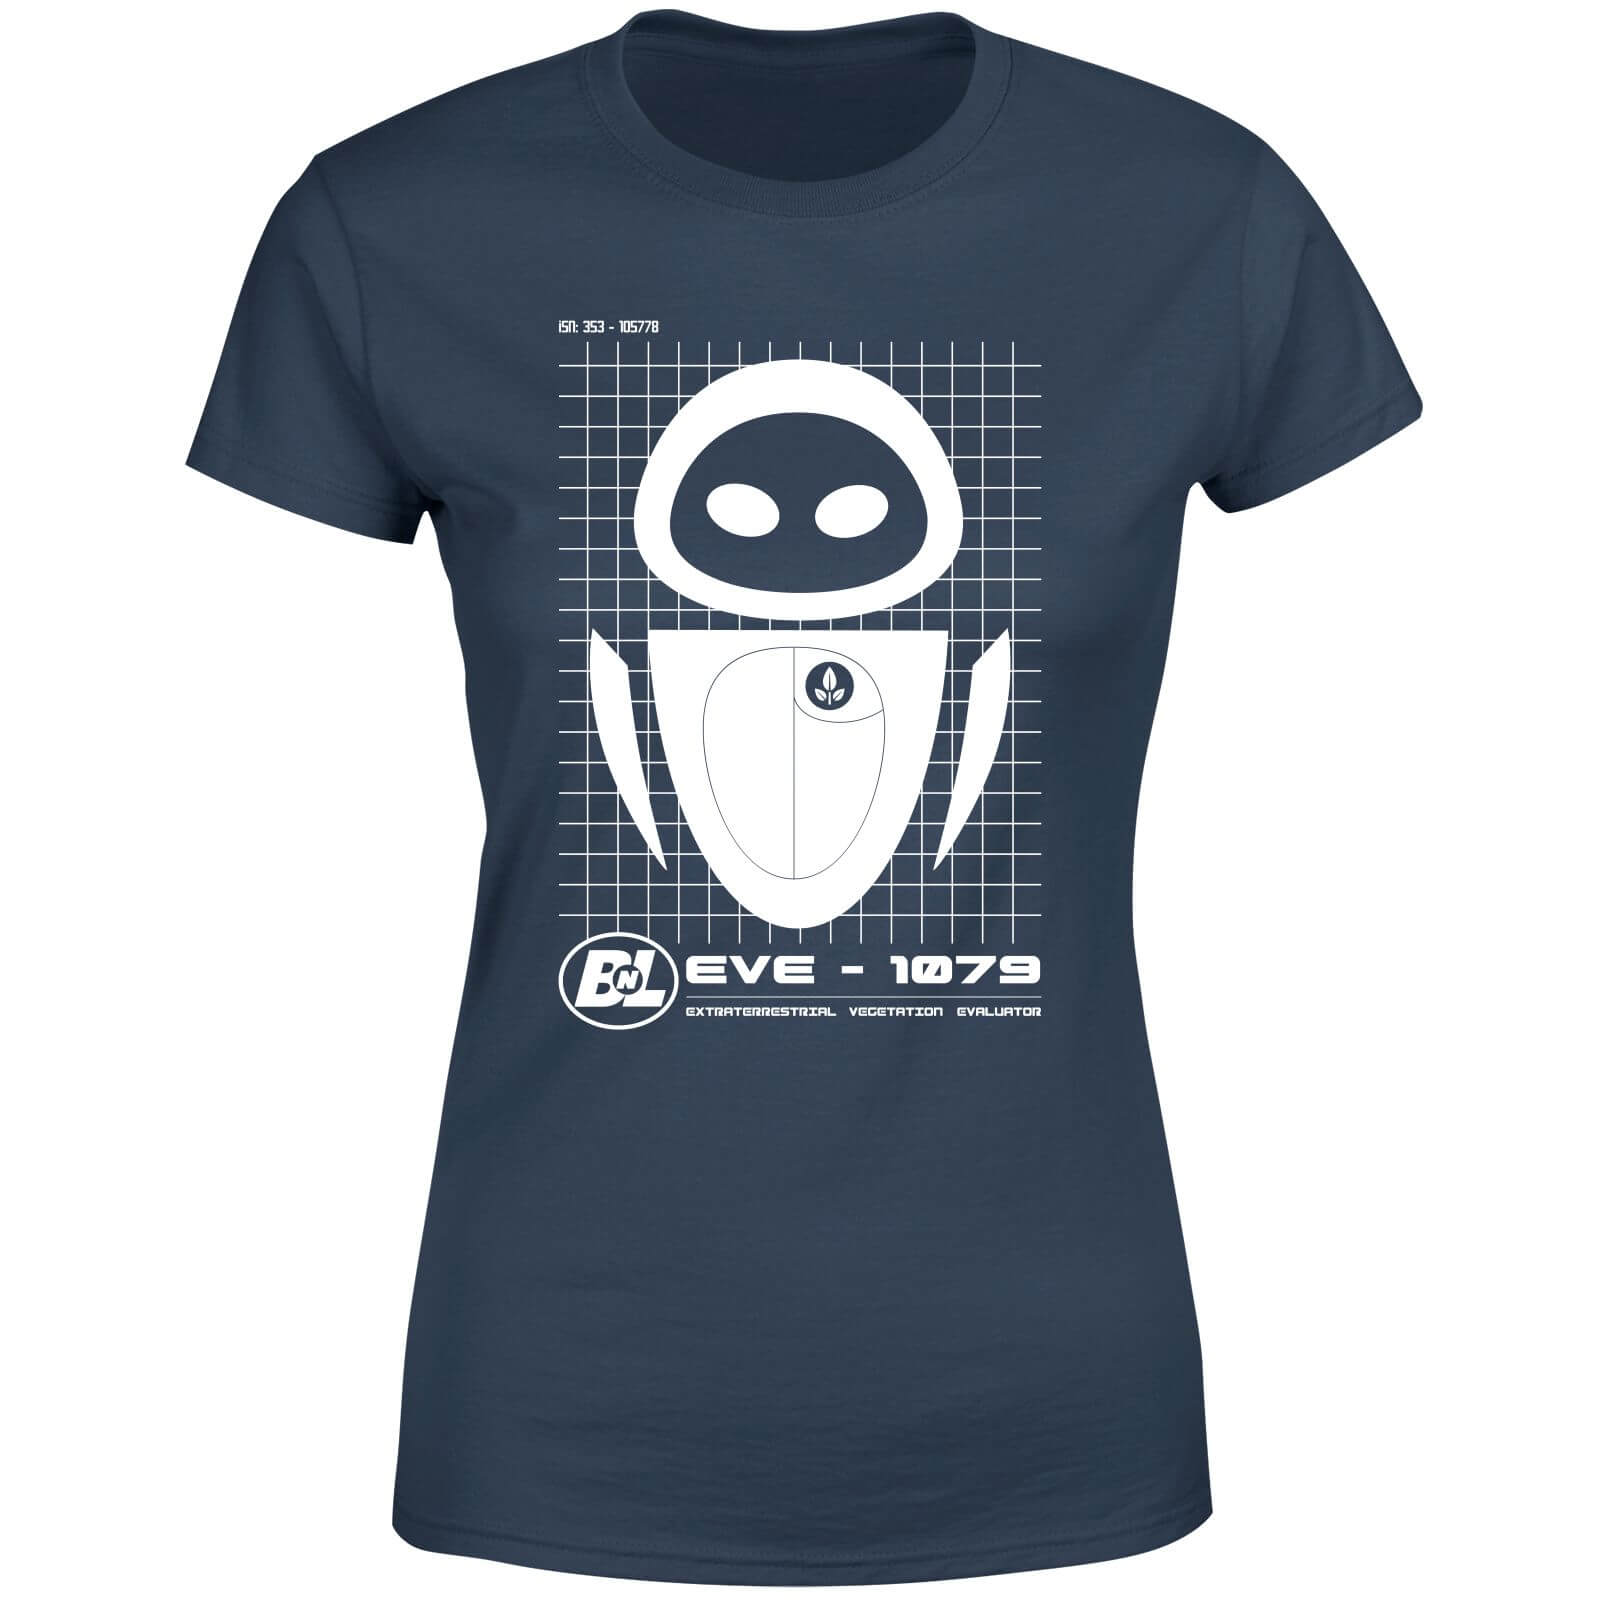 Wall-E Eve Schematic Women's T-Shirt - Navy - XL